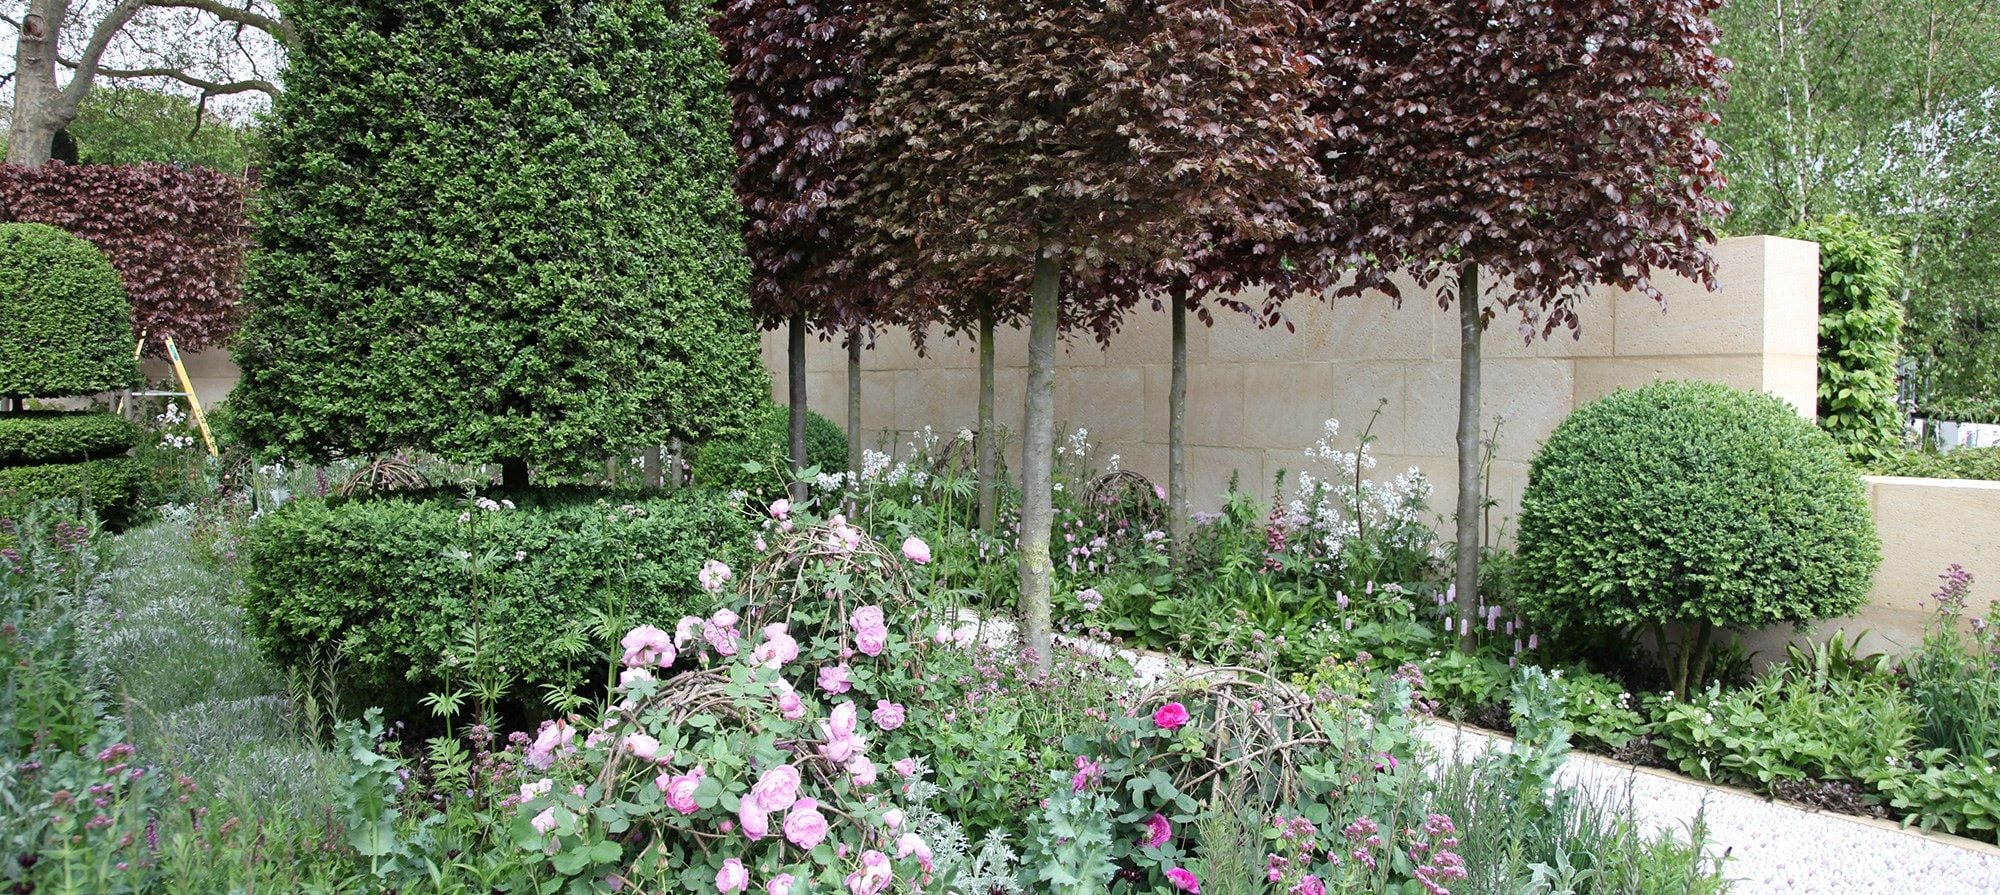 The Laurent-Perrier Garden designed by Arne Maynard